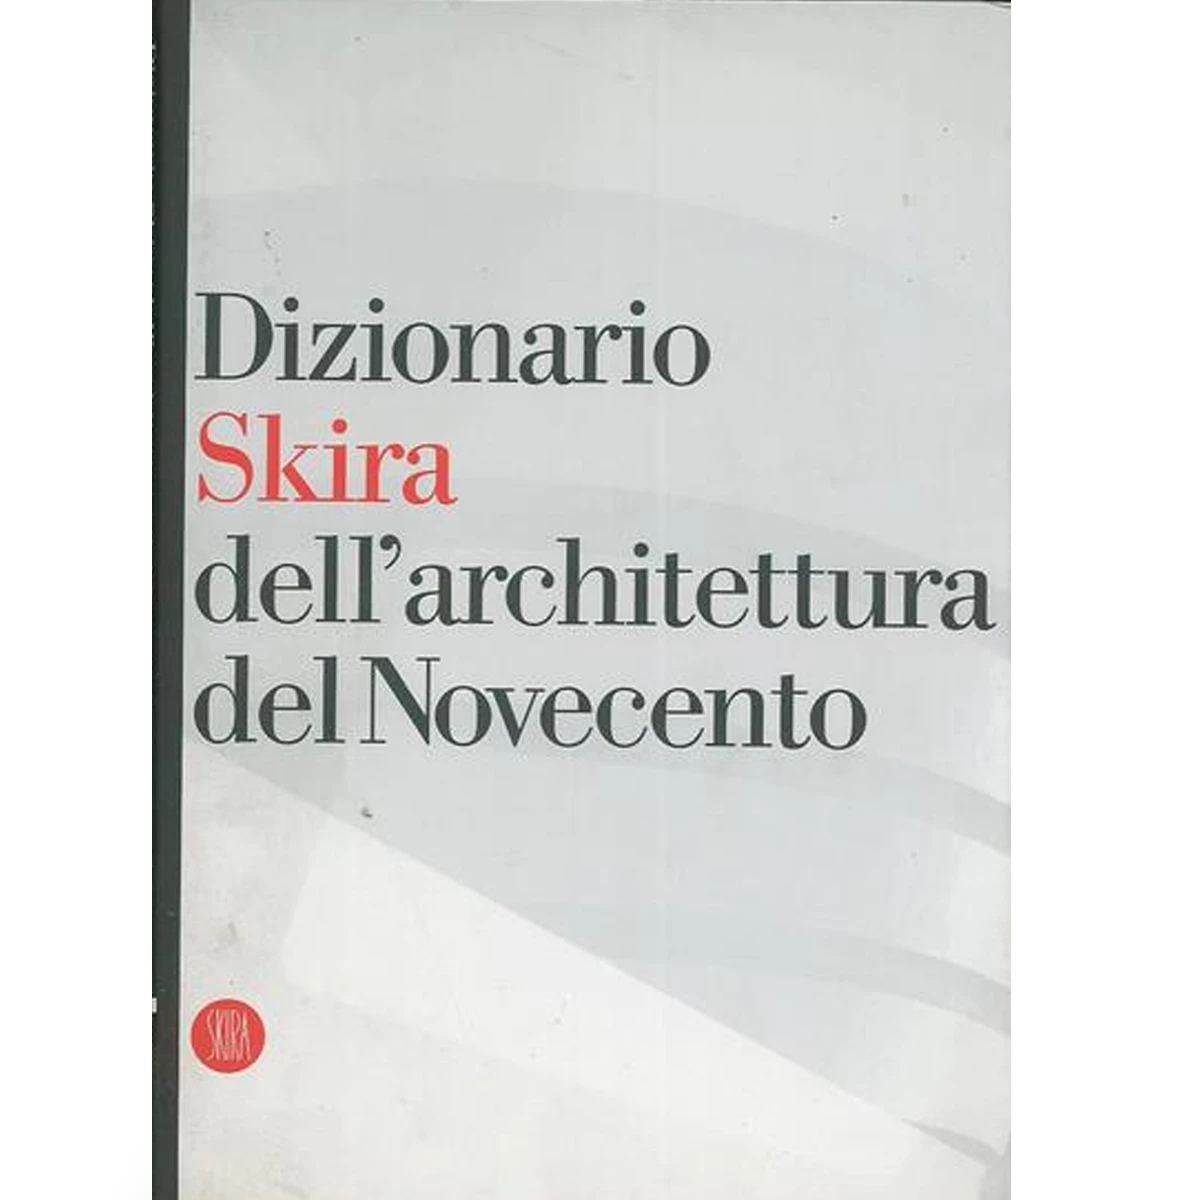 Dizionario Skira dell’architettura del Novecento